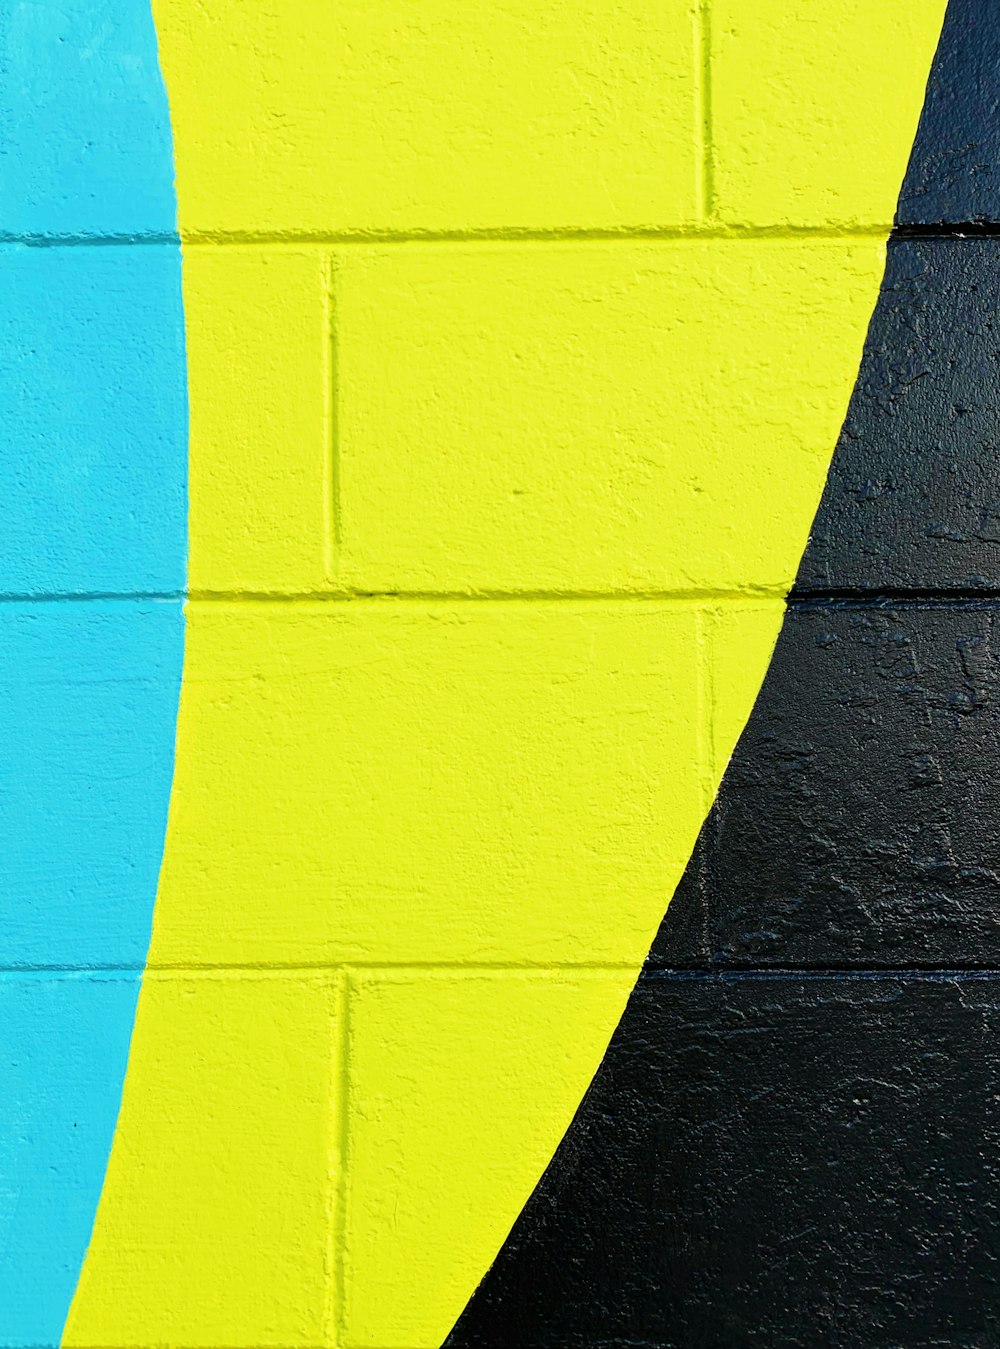 blaugrün, gelb und schwarz gestrichene Wand